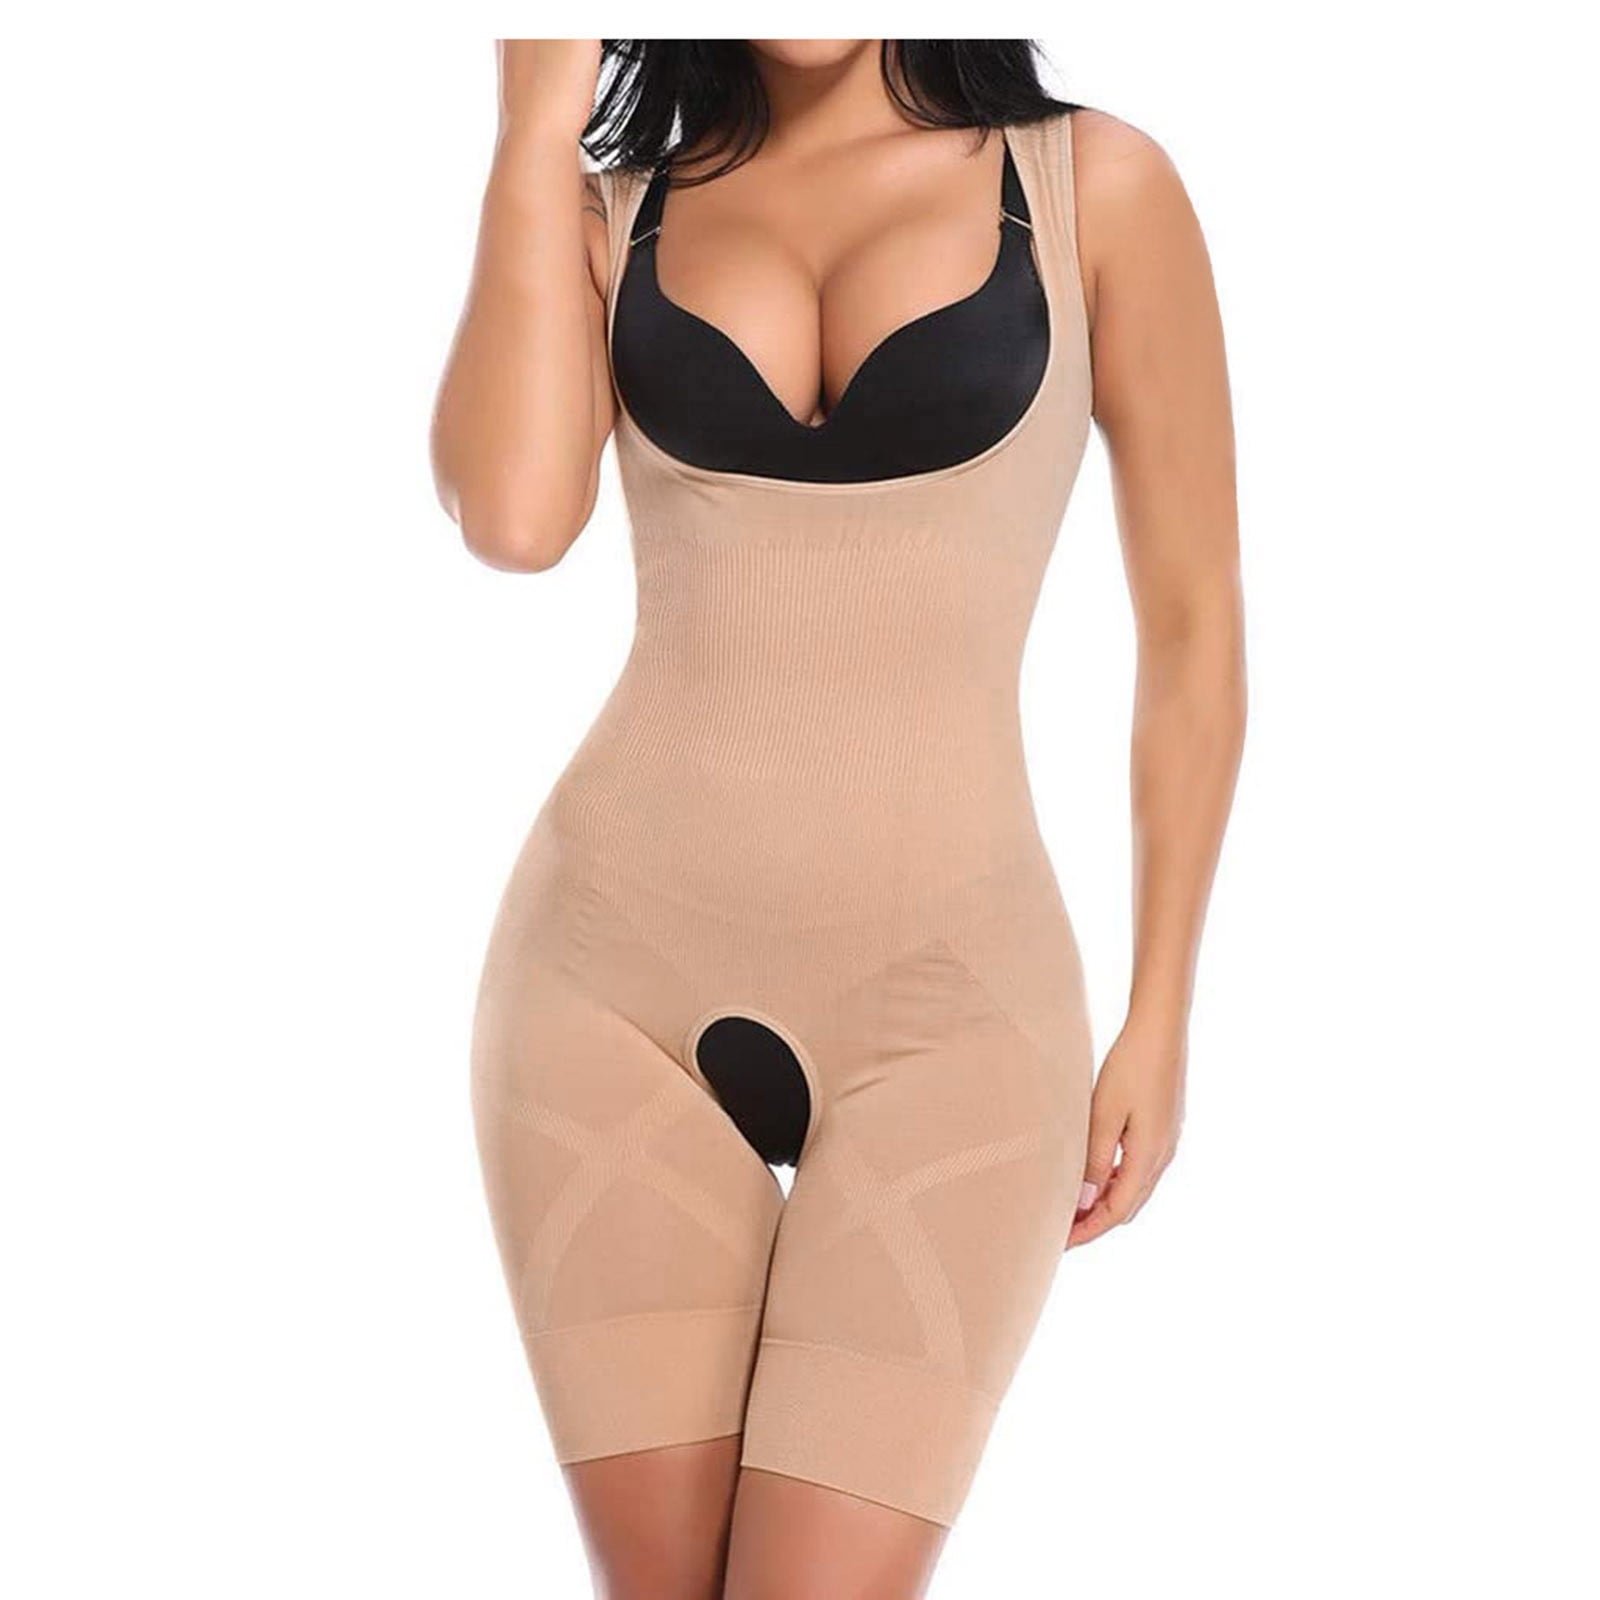 MRULIC lingerie for women Women's Shaping Waist Tights Slim One-Piece Belly  In Body Shapewear Bra Black B + One size